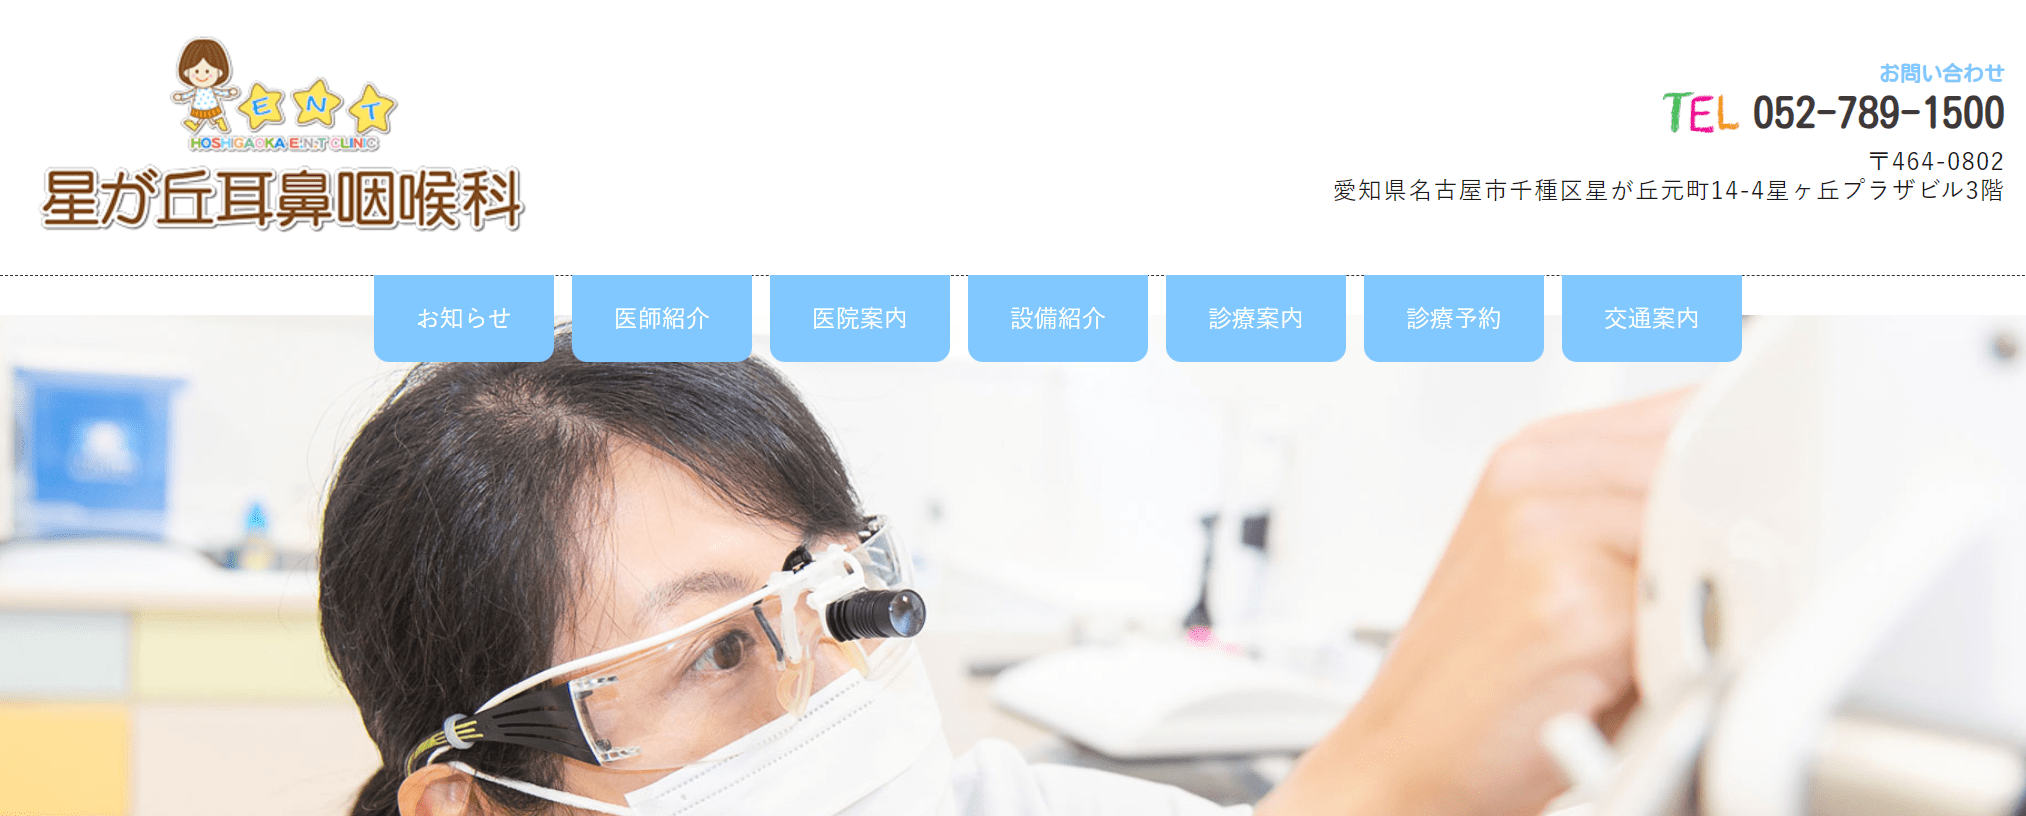 名古屋市で評判の耳鼻咽喉科クリニックおすすめ10選 星が丘耳鼻咽喉科